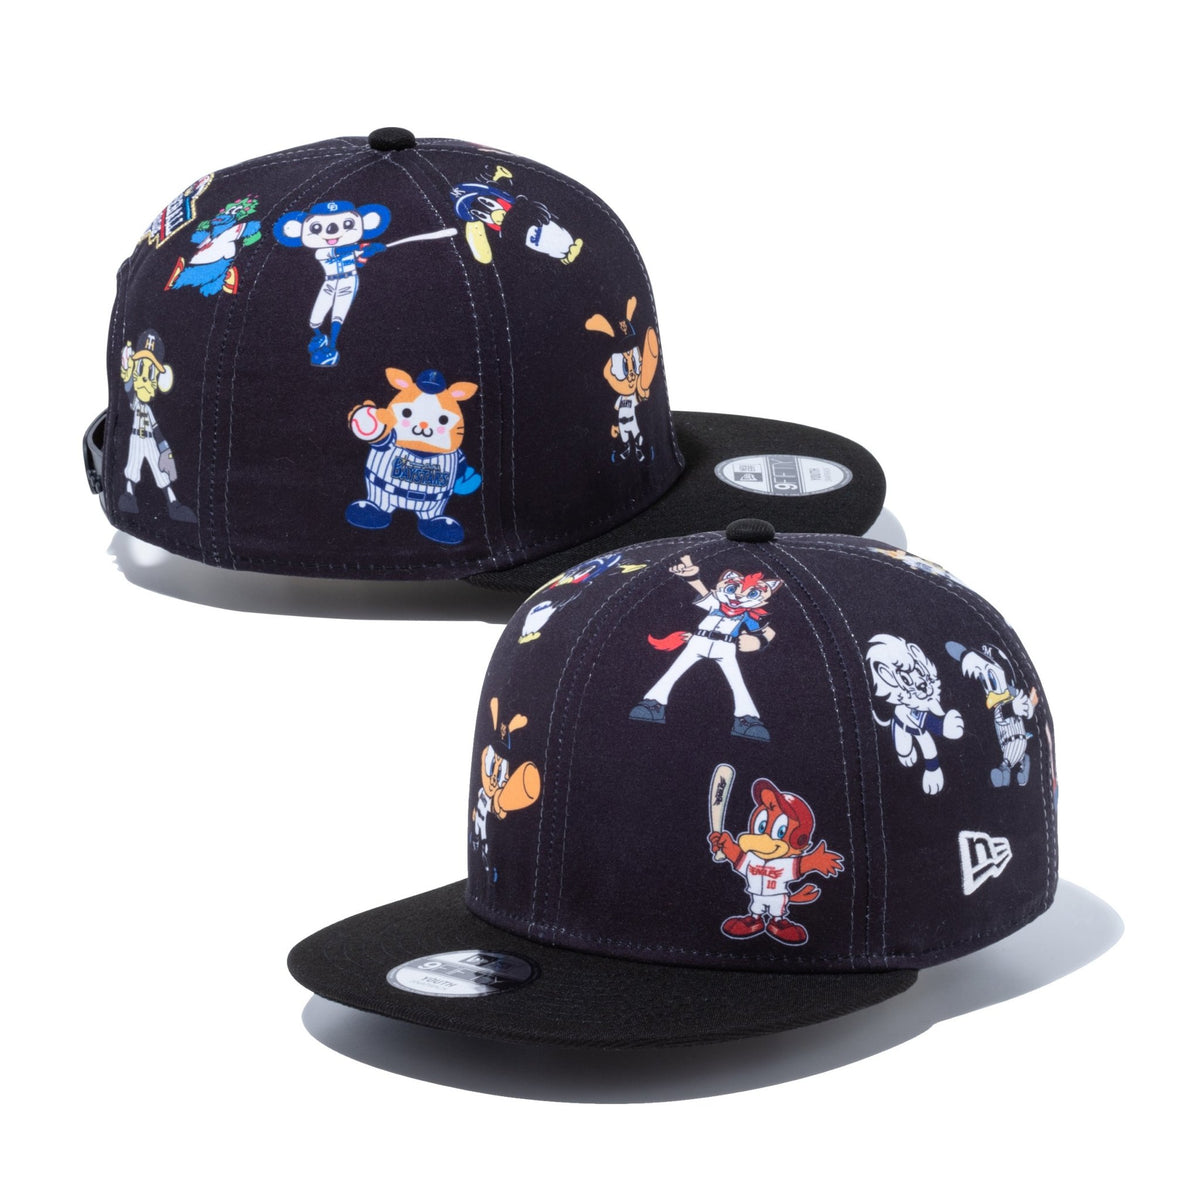 ニューエラ12球団 コナミ eスポーツ 限定品 キャップ - 帽子